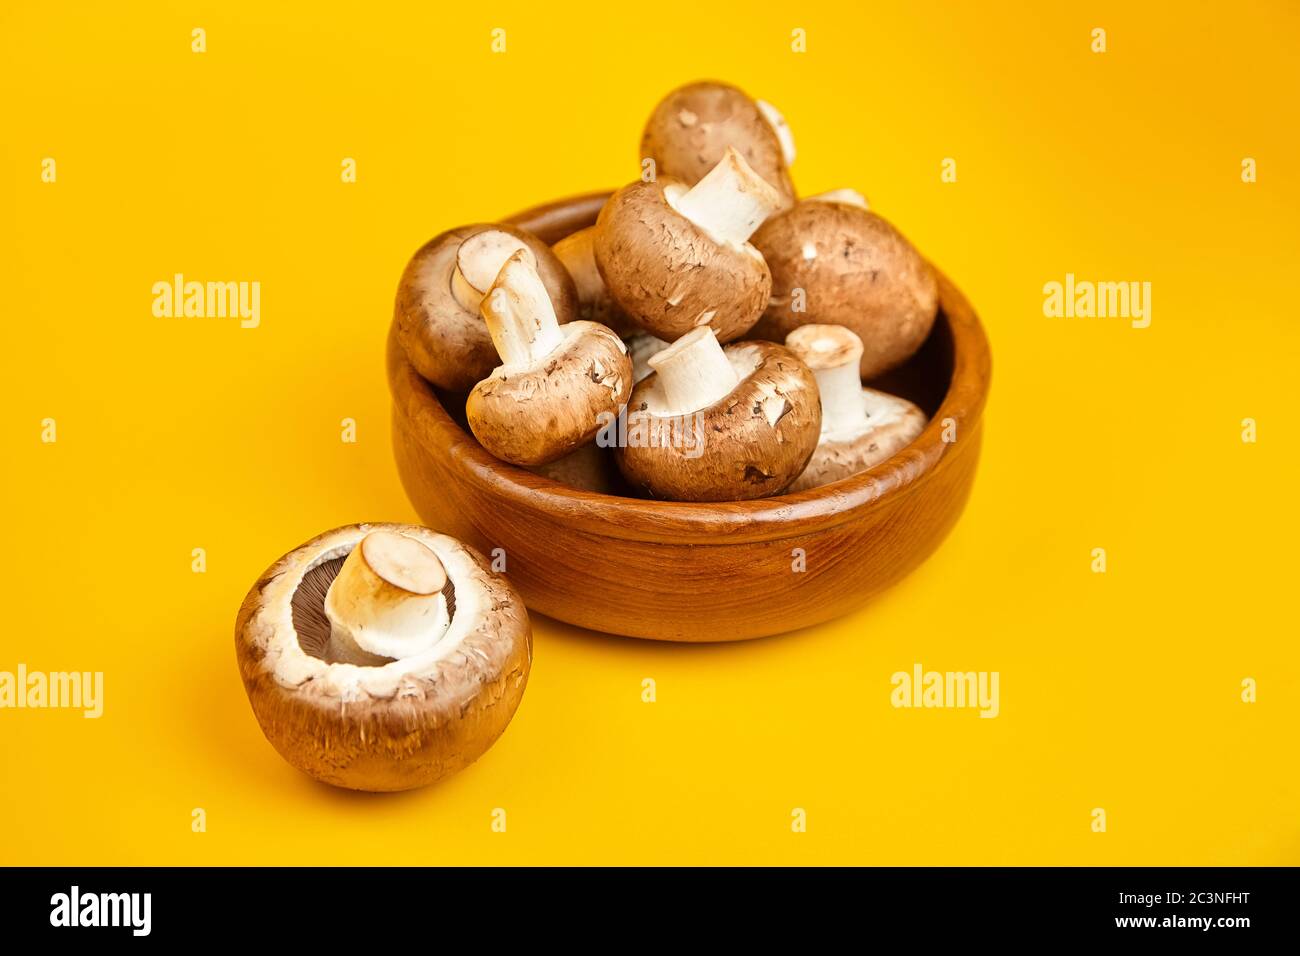 Funghi in ciotola di legno, champignons marroni freschi su fondo giallo. Ingrediente alimentare crudo Foto Stock